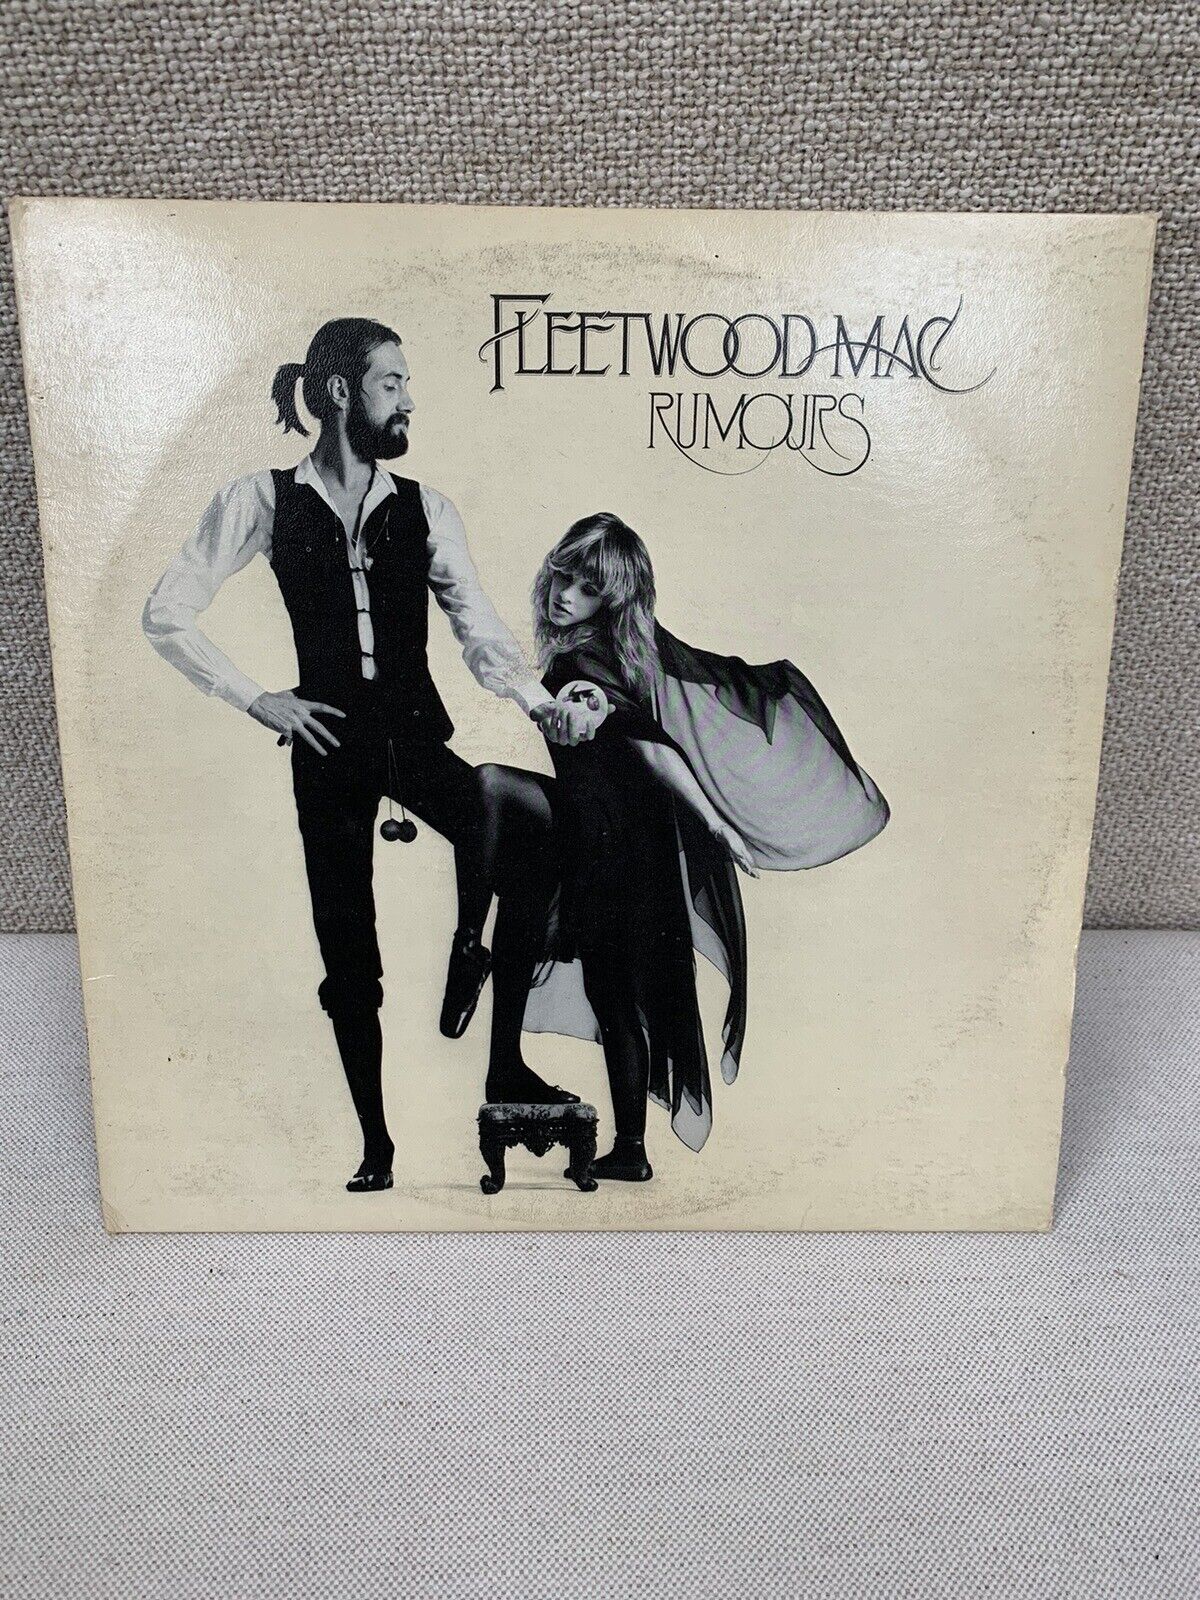 Fleetwood Mac Rumours - BSK 3010 - 1977 - Vinyl Record LP Album - Original US Pr